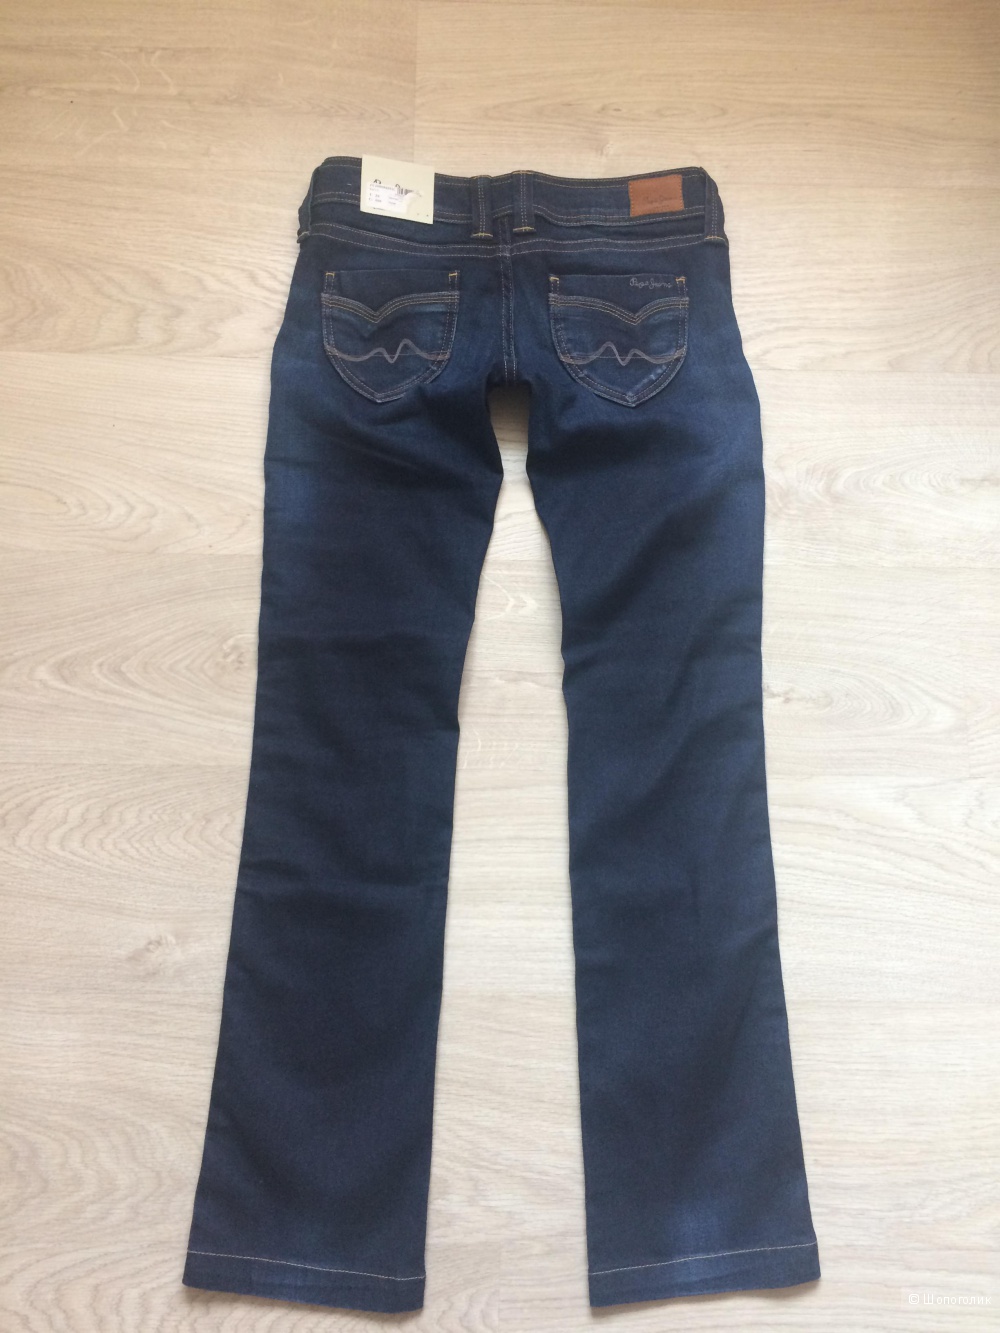 Джинсы Pepe jeans London , 29/34 , на 44-46 размер